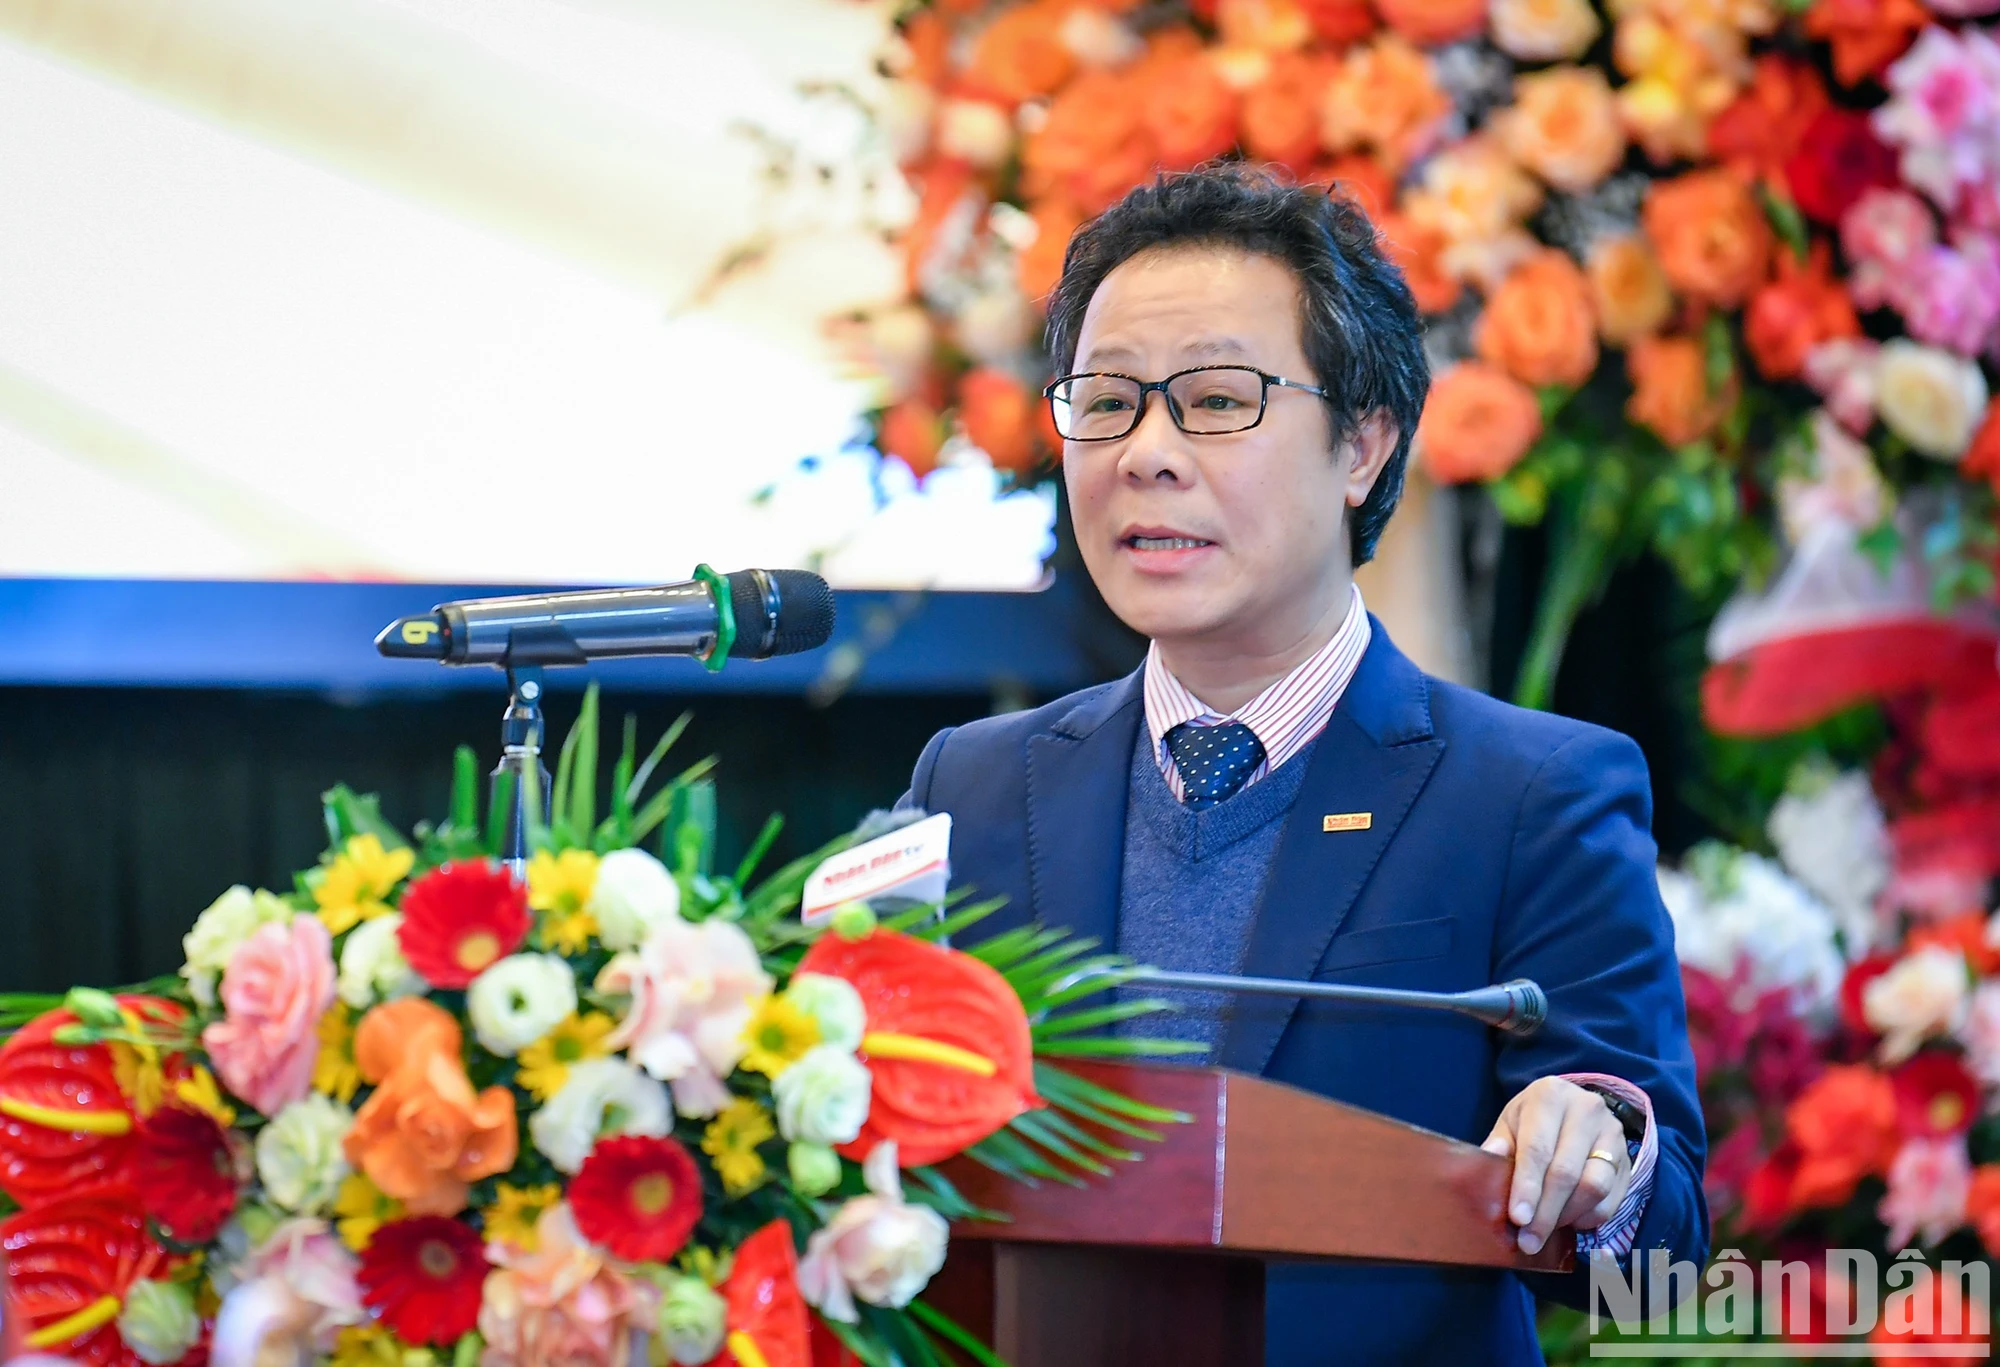 Đồng chí Vũ Mai Hoàng, Trưởng Ban Nhân Dân cuối tuần trình bày về chặng đường phát triển của báo Nhân Dân cuối tuần tại lễ kỷ niệm.